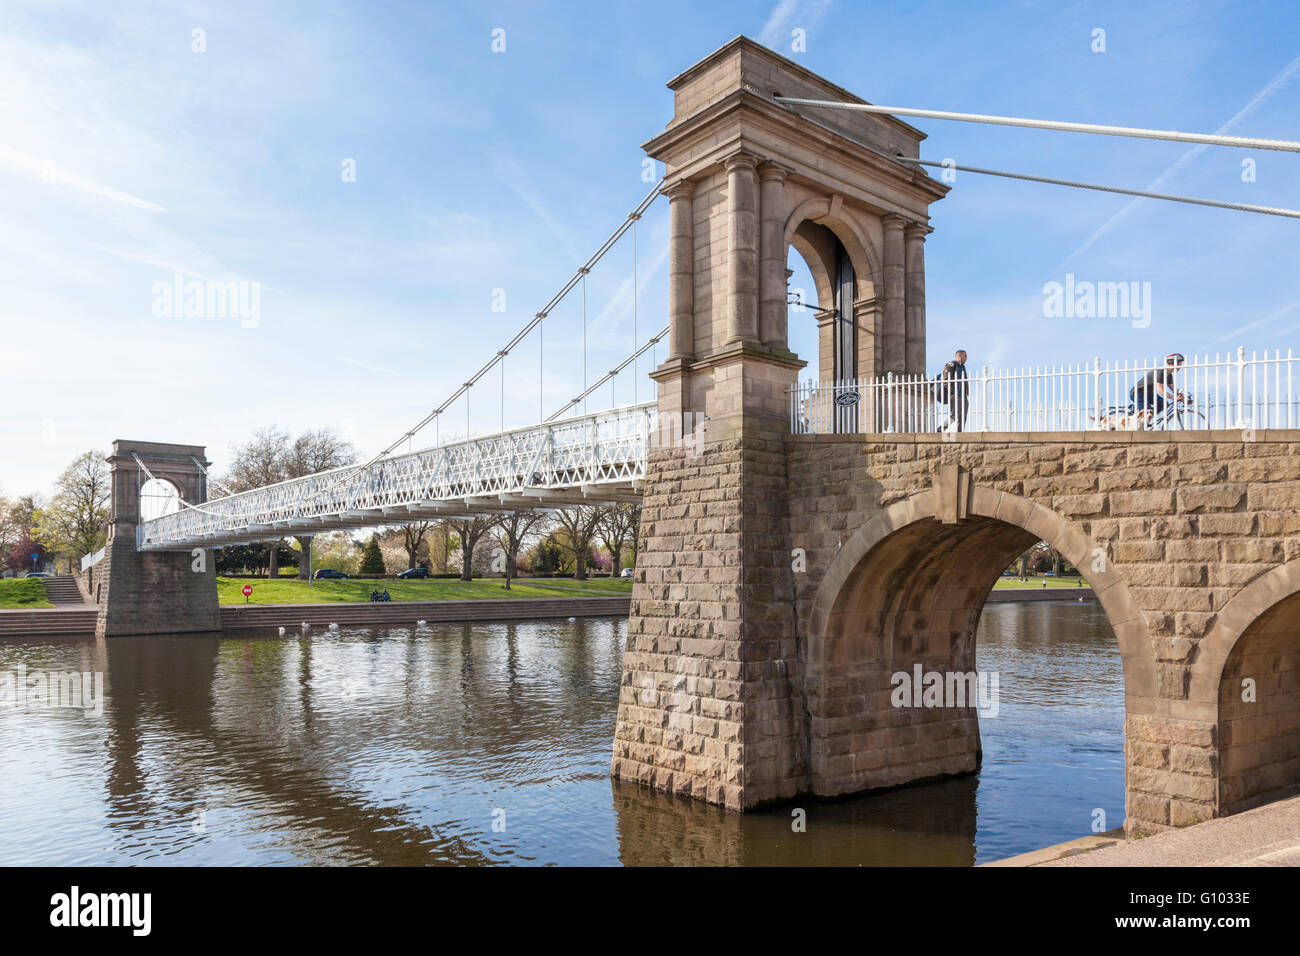 Wilford ponte di sospensione, una passerella sul fiume Trent, tra West Bridgford e Nottingham, Inghilterra, Regno Unito Foto Stock